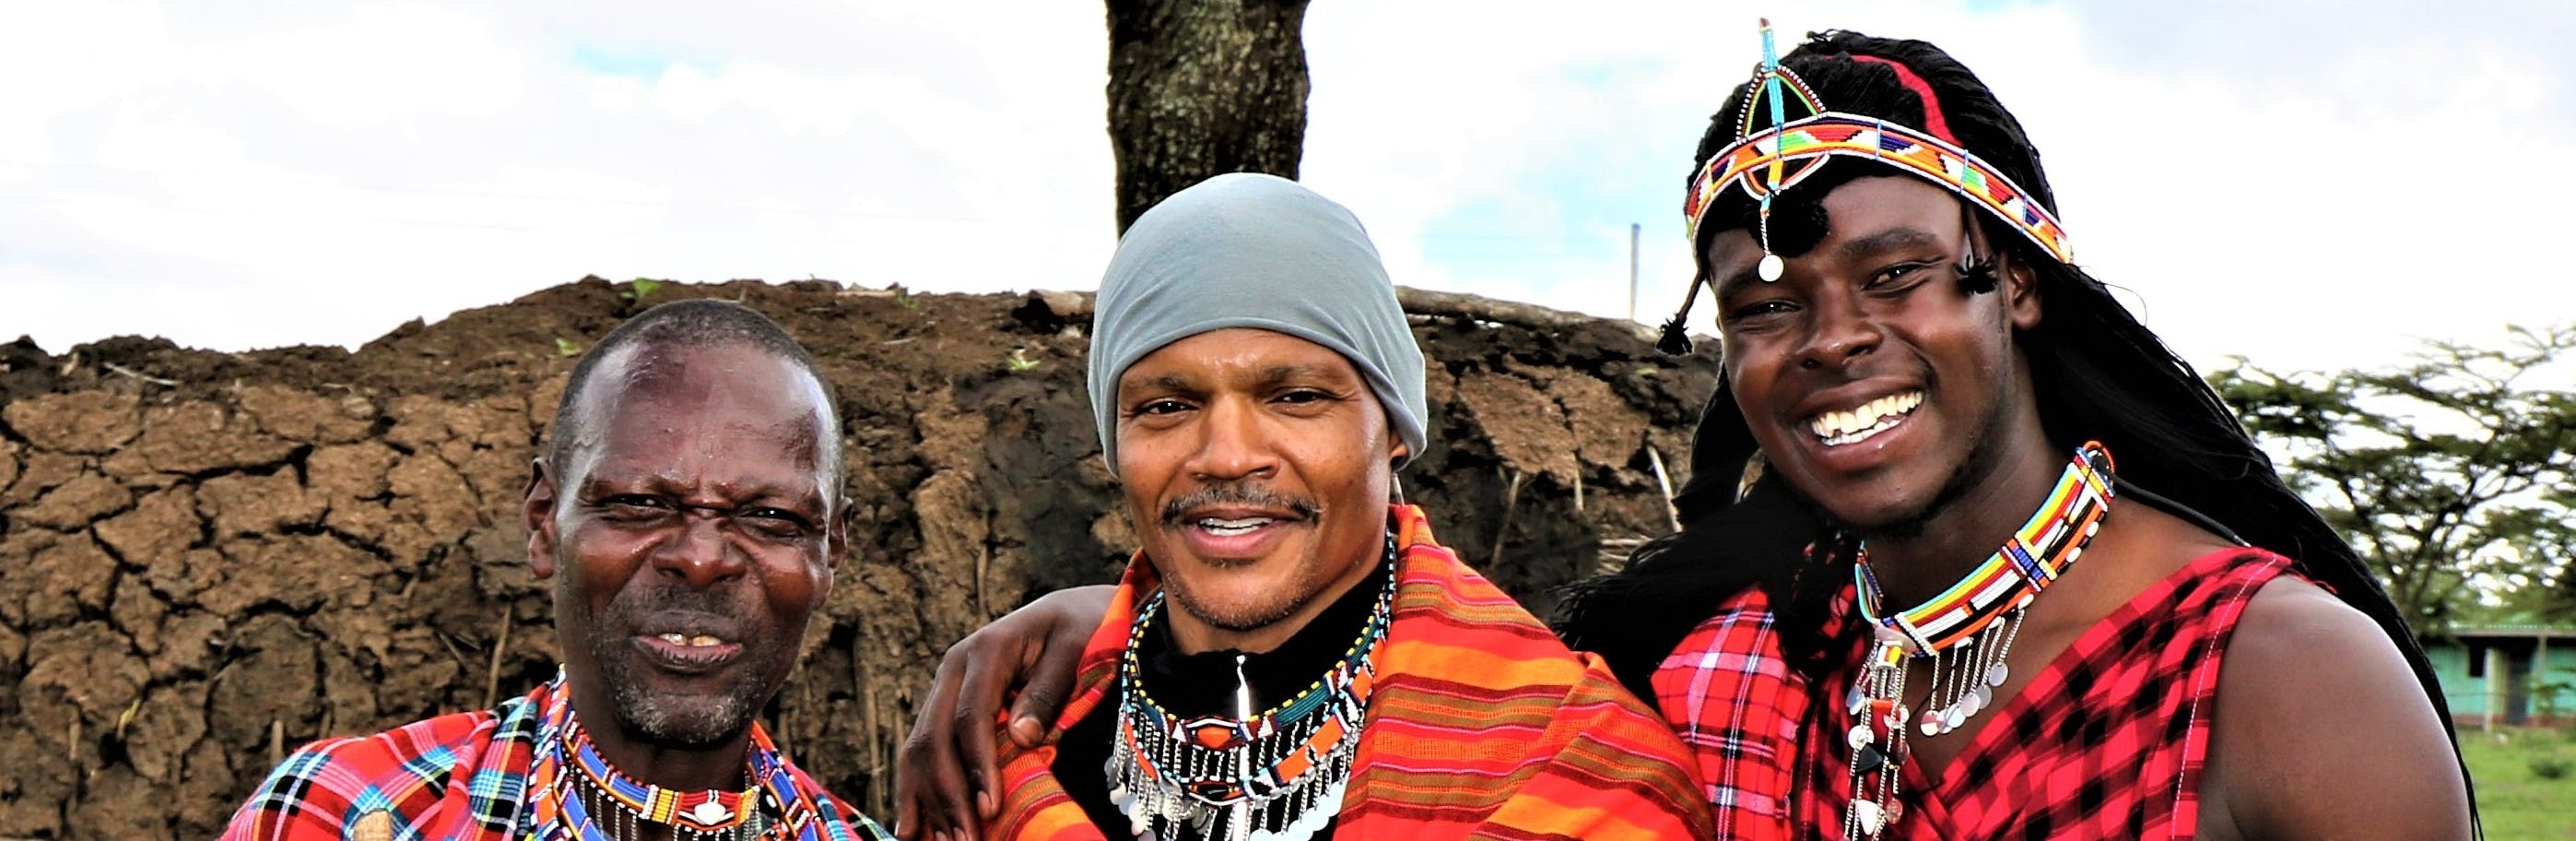 Einblicke in das kenianische Leben 6-tägige Tour ab Nairobi